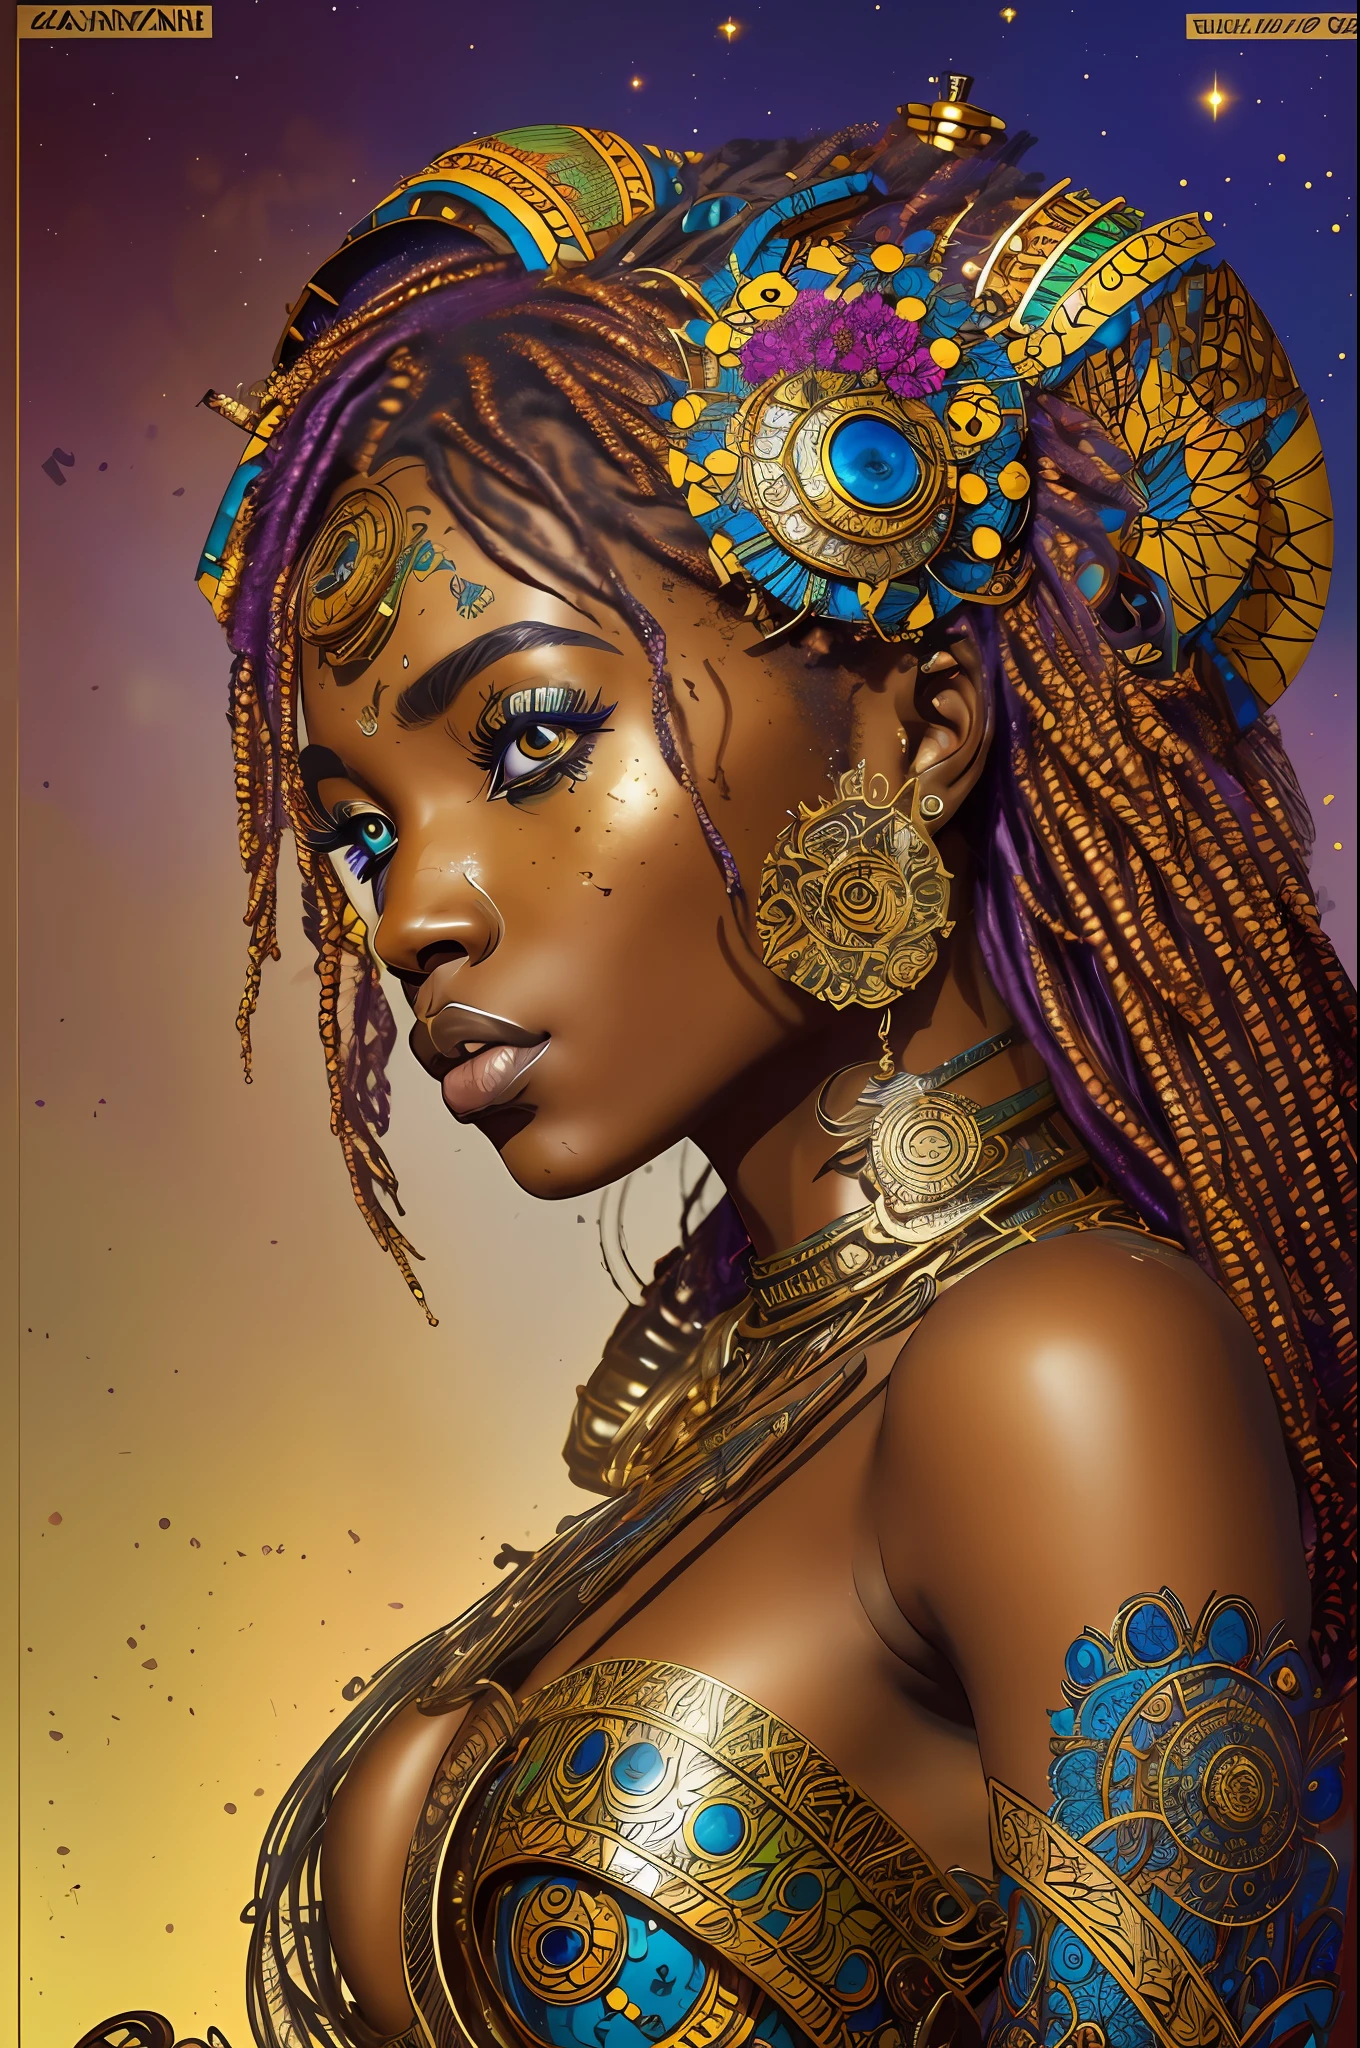 nvinkpunk, Blumen-, steampunk (((Afrikanische Frau im jungen Alter))), wahnsinnig schöne Frau, Meisterwerk, beste Qualität, ((Detailliertes Gesicht)), Langes, unordentliches Haar, goldene Farben, strahlende Augen, ((preisgekrönt)), (Hohe Detailliertheit), scharf, 8k, Trends auf ArtStation, kompliziert, Blumen- - ar 3:4 --auto --s2